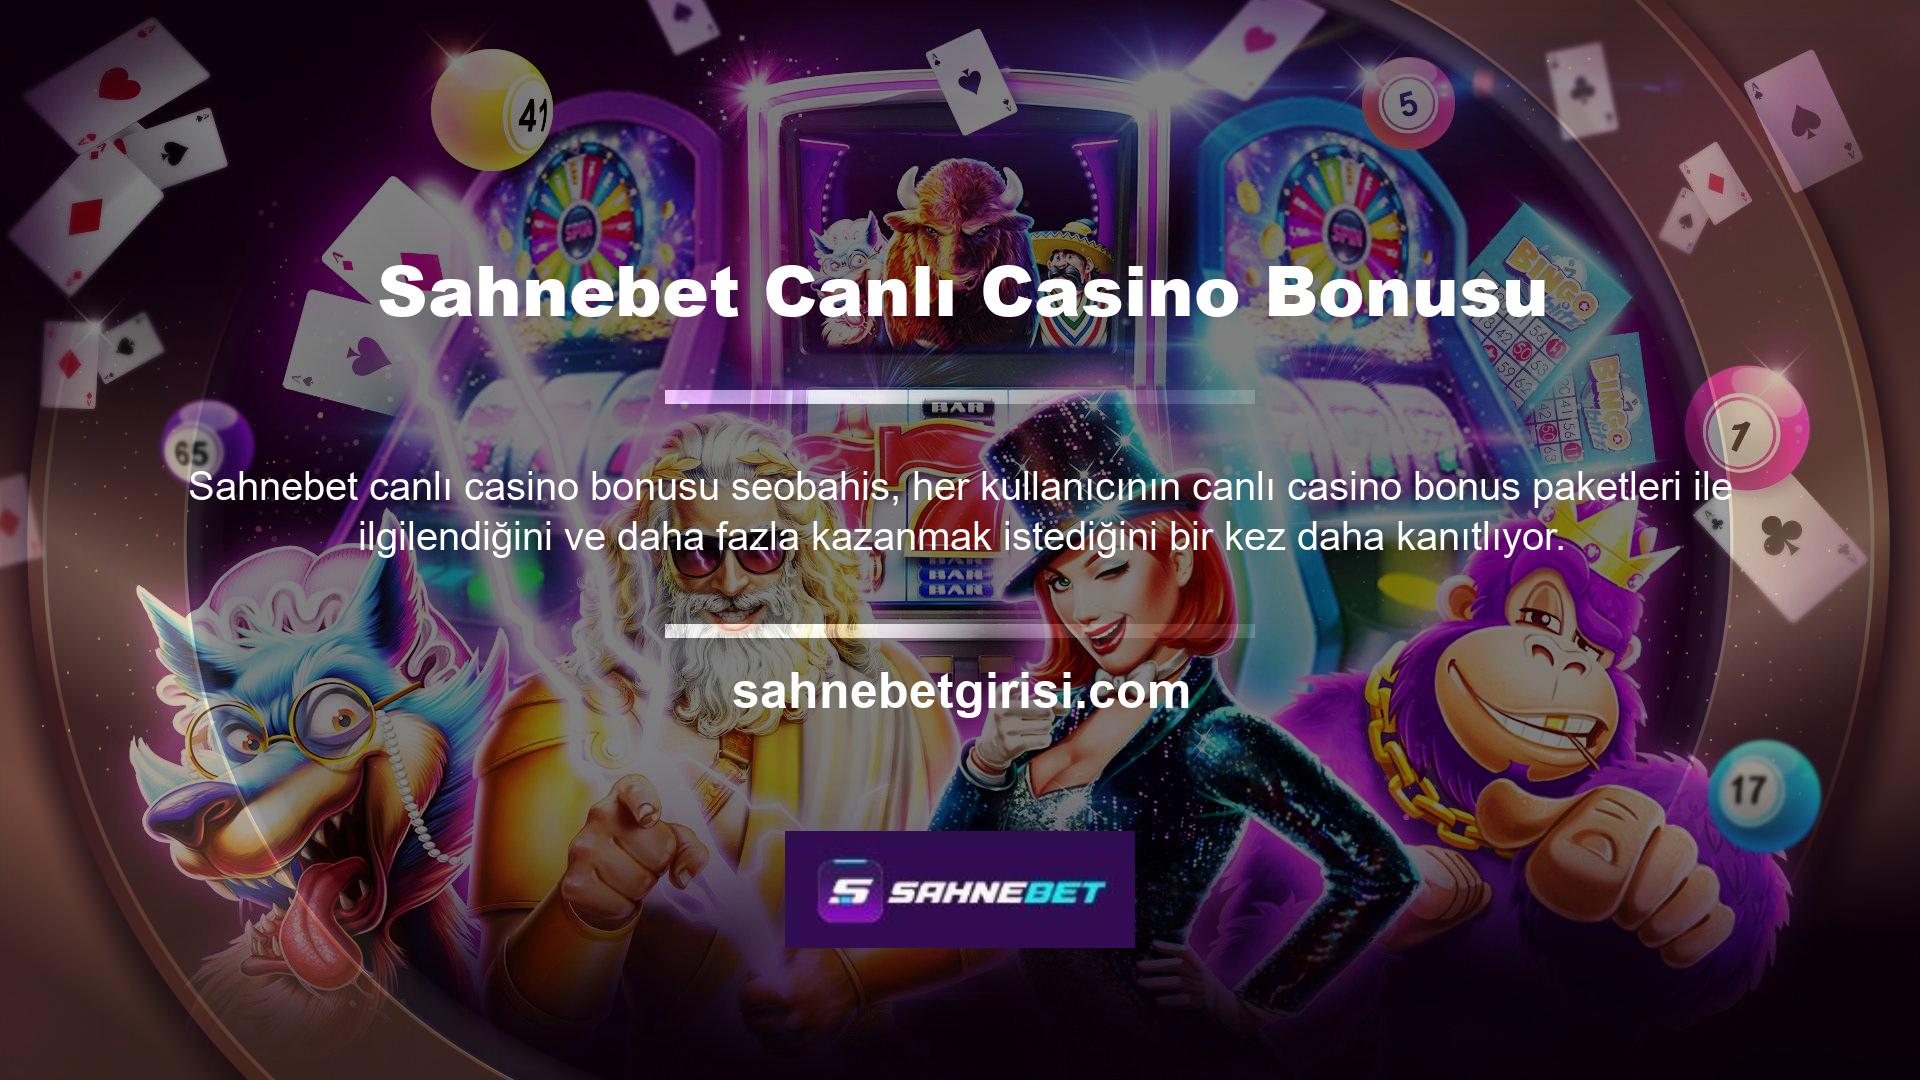 Çünkü casino bölümünde yer alan bonus seçenekleri size en zor zamanlarda bile çok para kazanma fırsatı sunabilmektedir